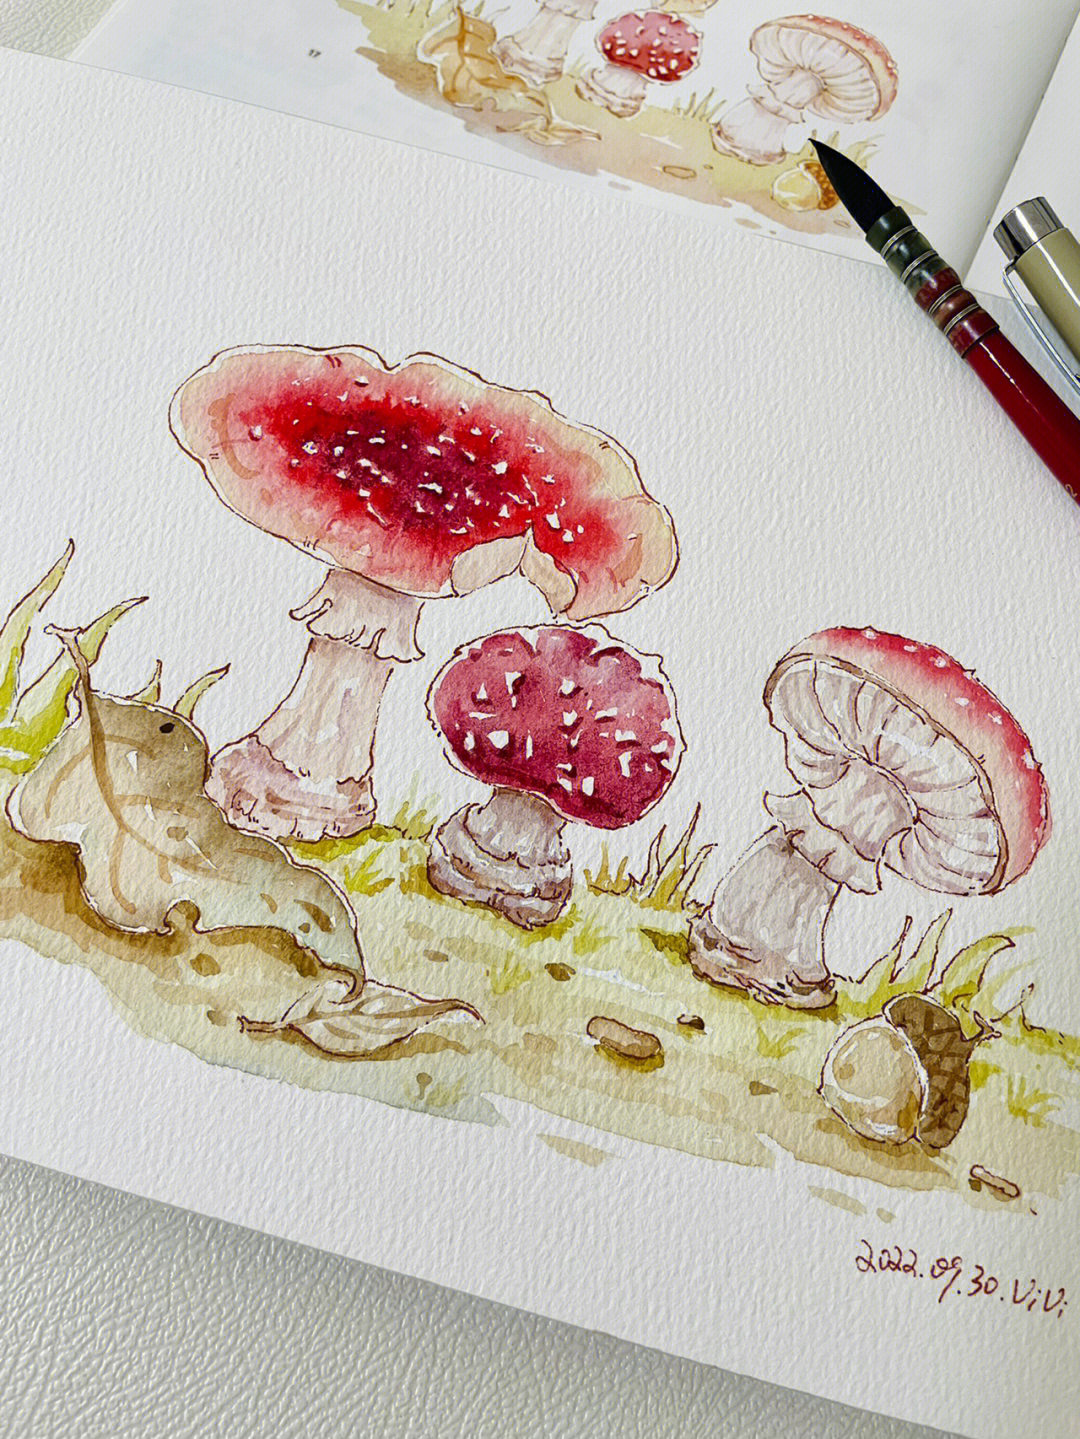 钢笔淡彩漂亮的蘑菇附线稿及过程